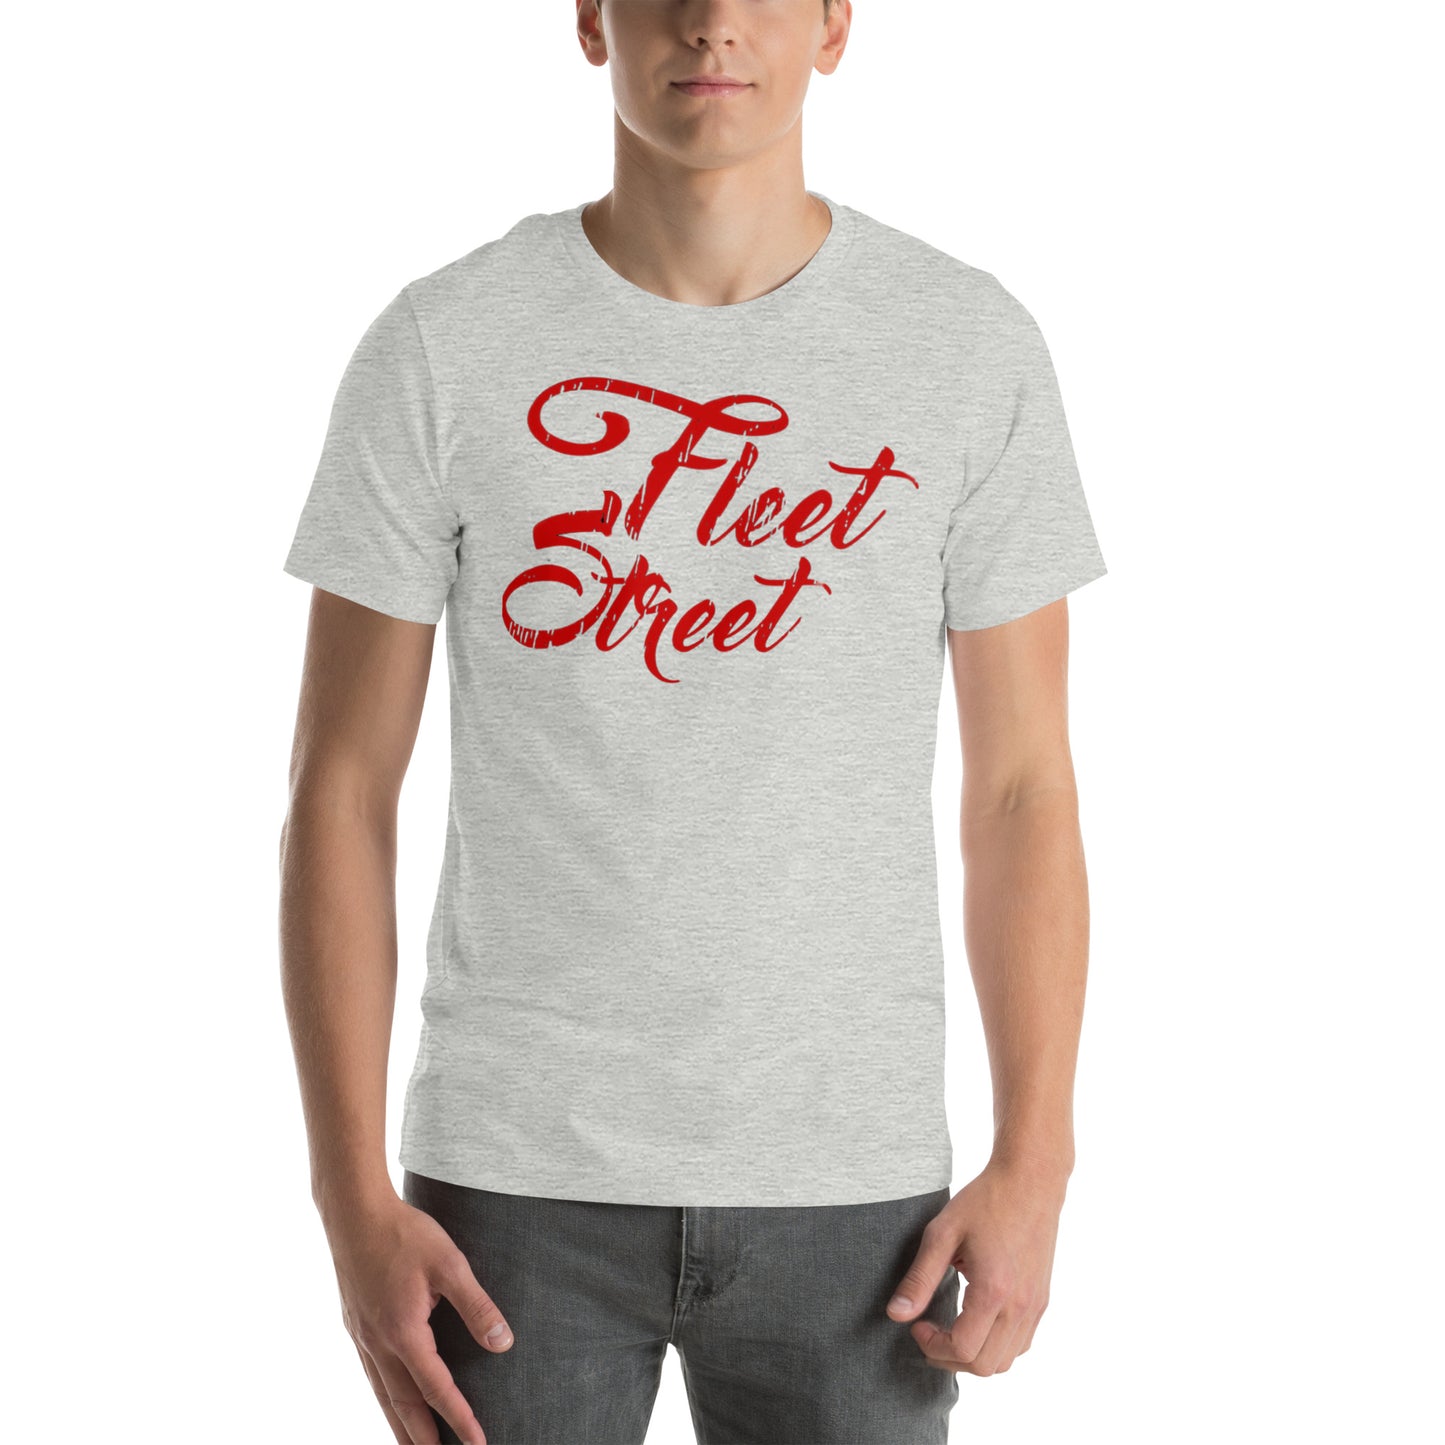 Fleet Street - Printed Unisex t-shirt